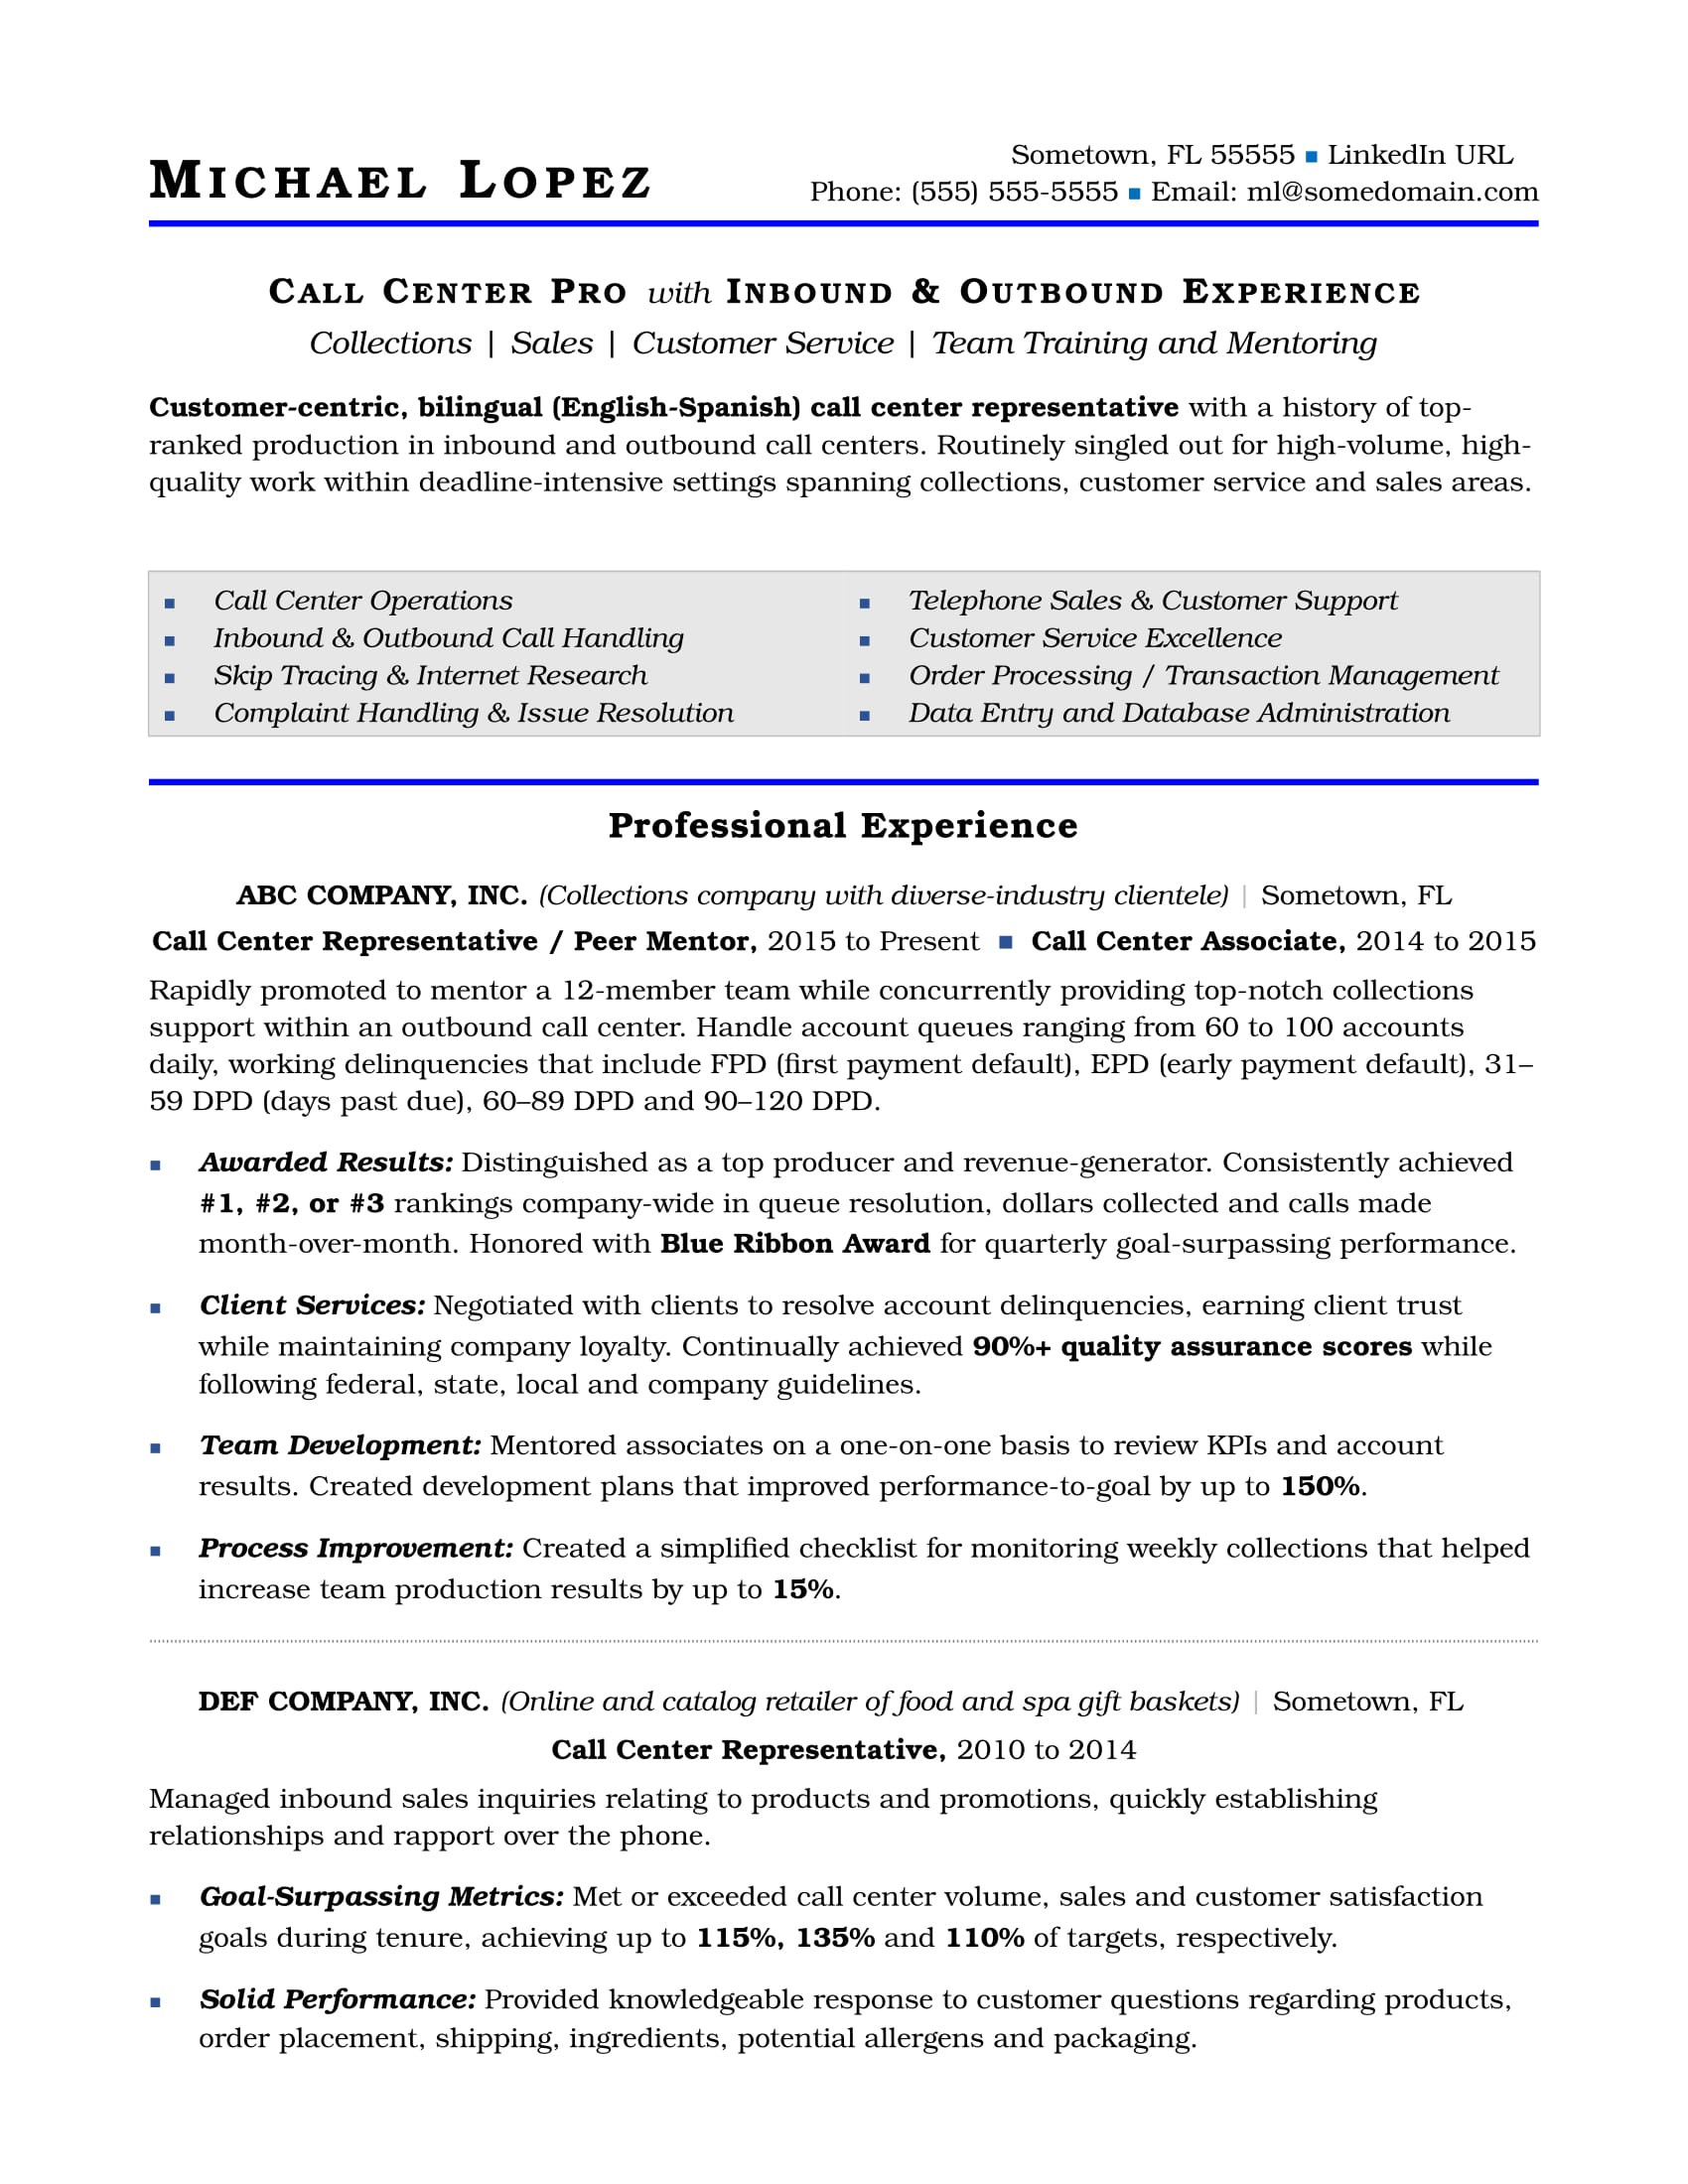 Customer Service Skills for Resume Samples Call Center Resume Sample Monster.com